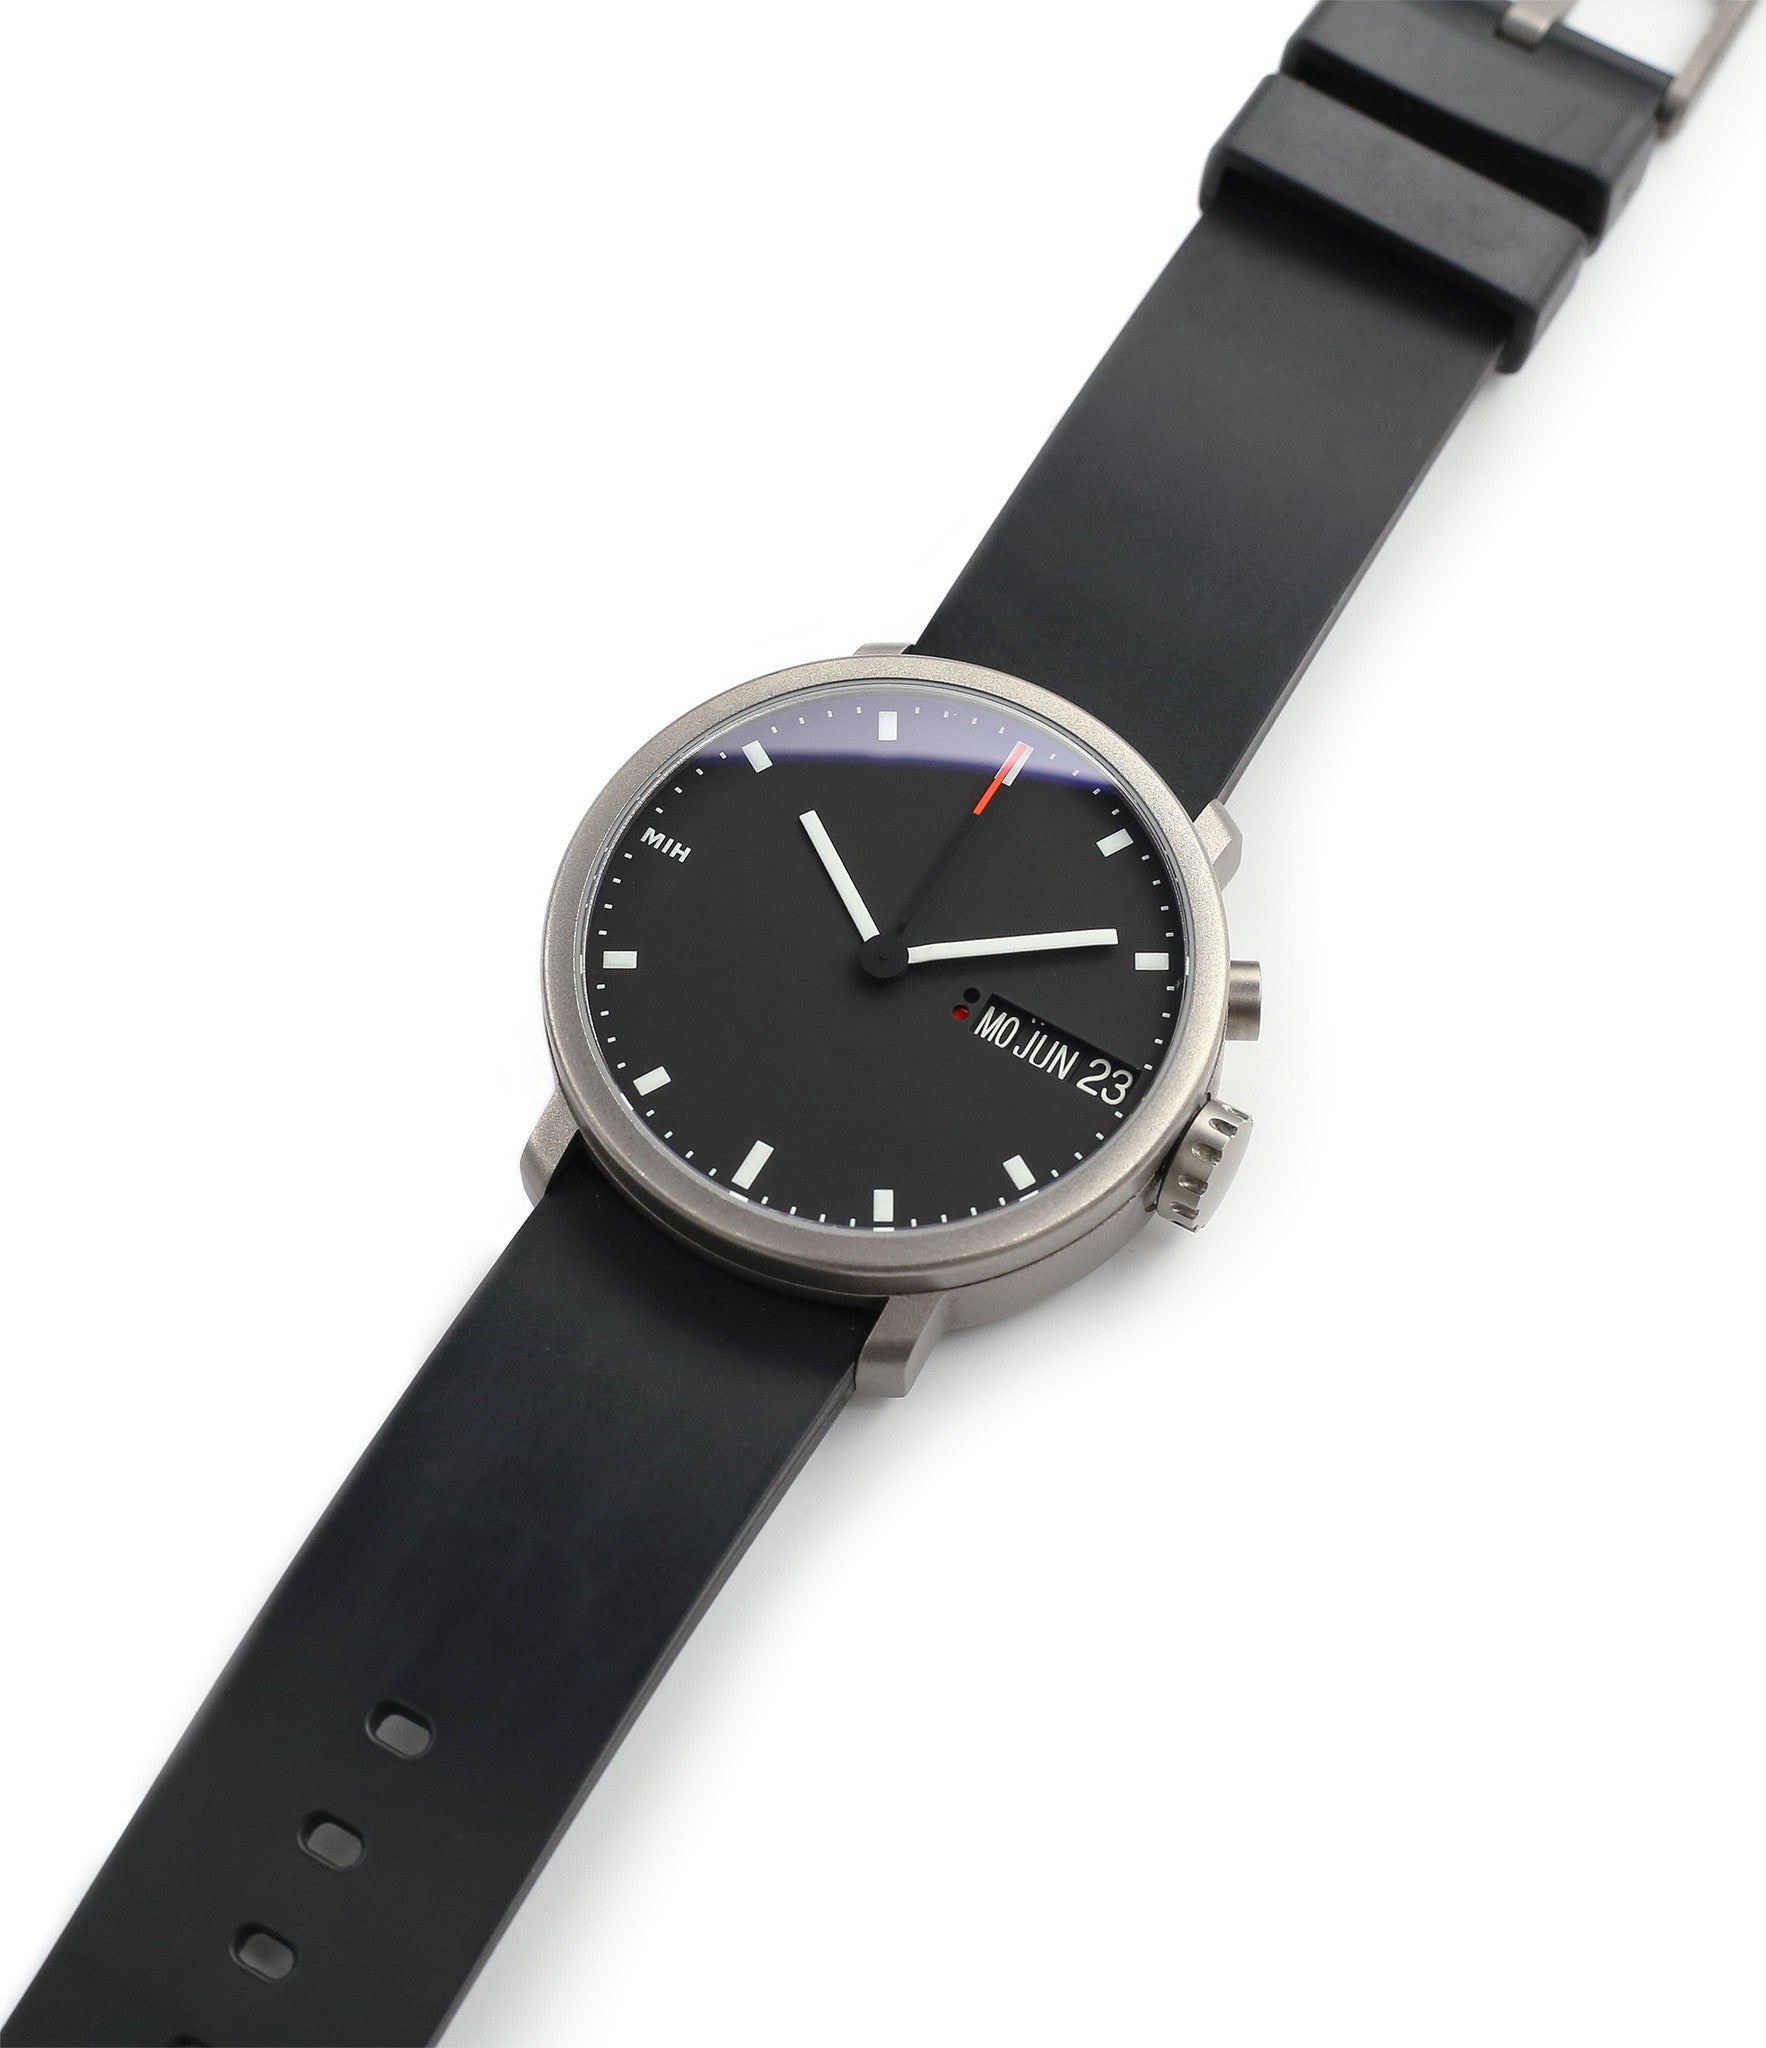 Buy MIH titanium watch | Buy MIH rare 